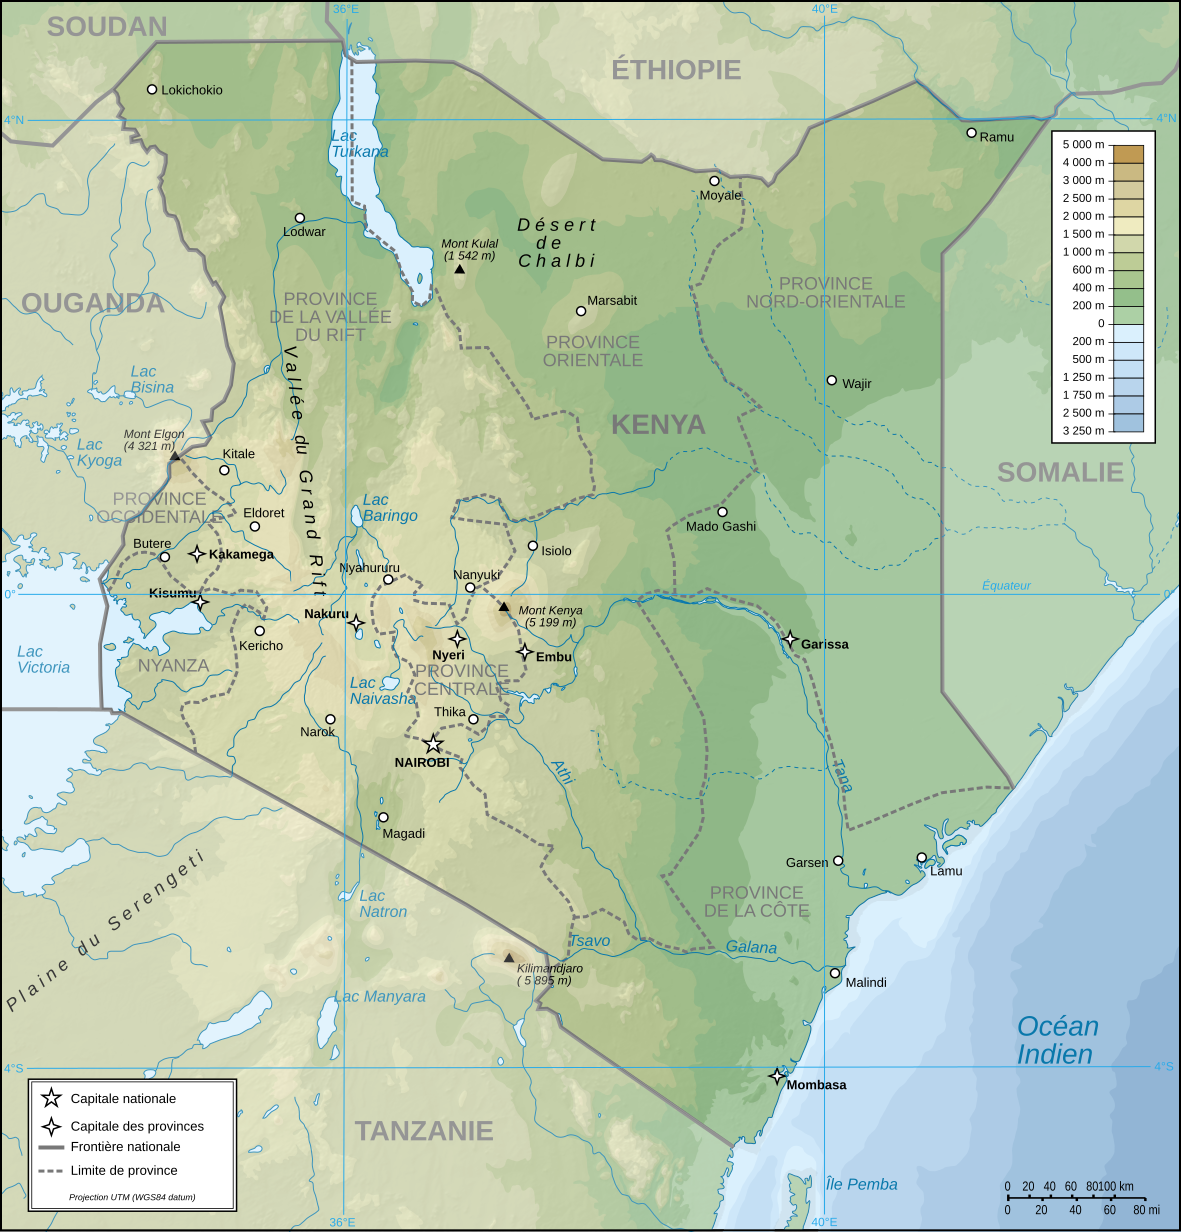 Carte topographique du Kenya (attention : chiffres des latitudes longitudes (en bleu) erronés)